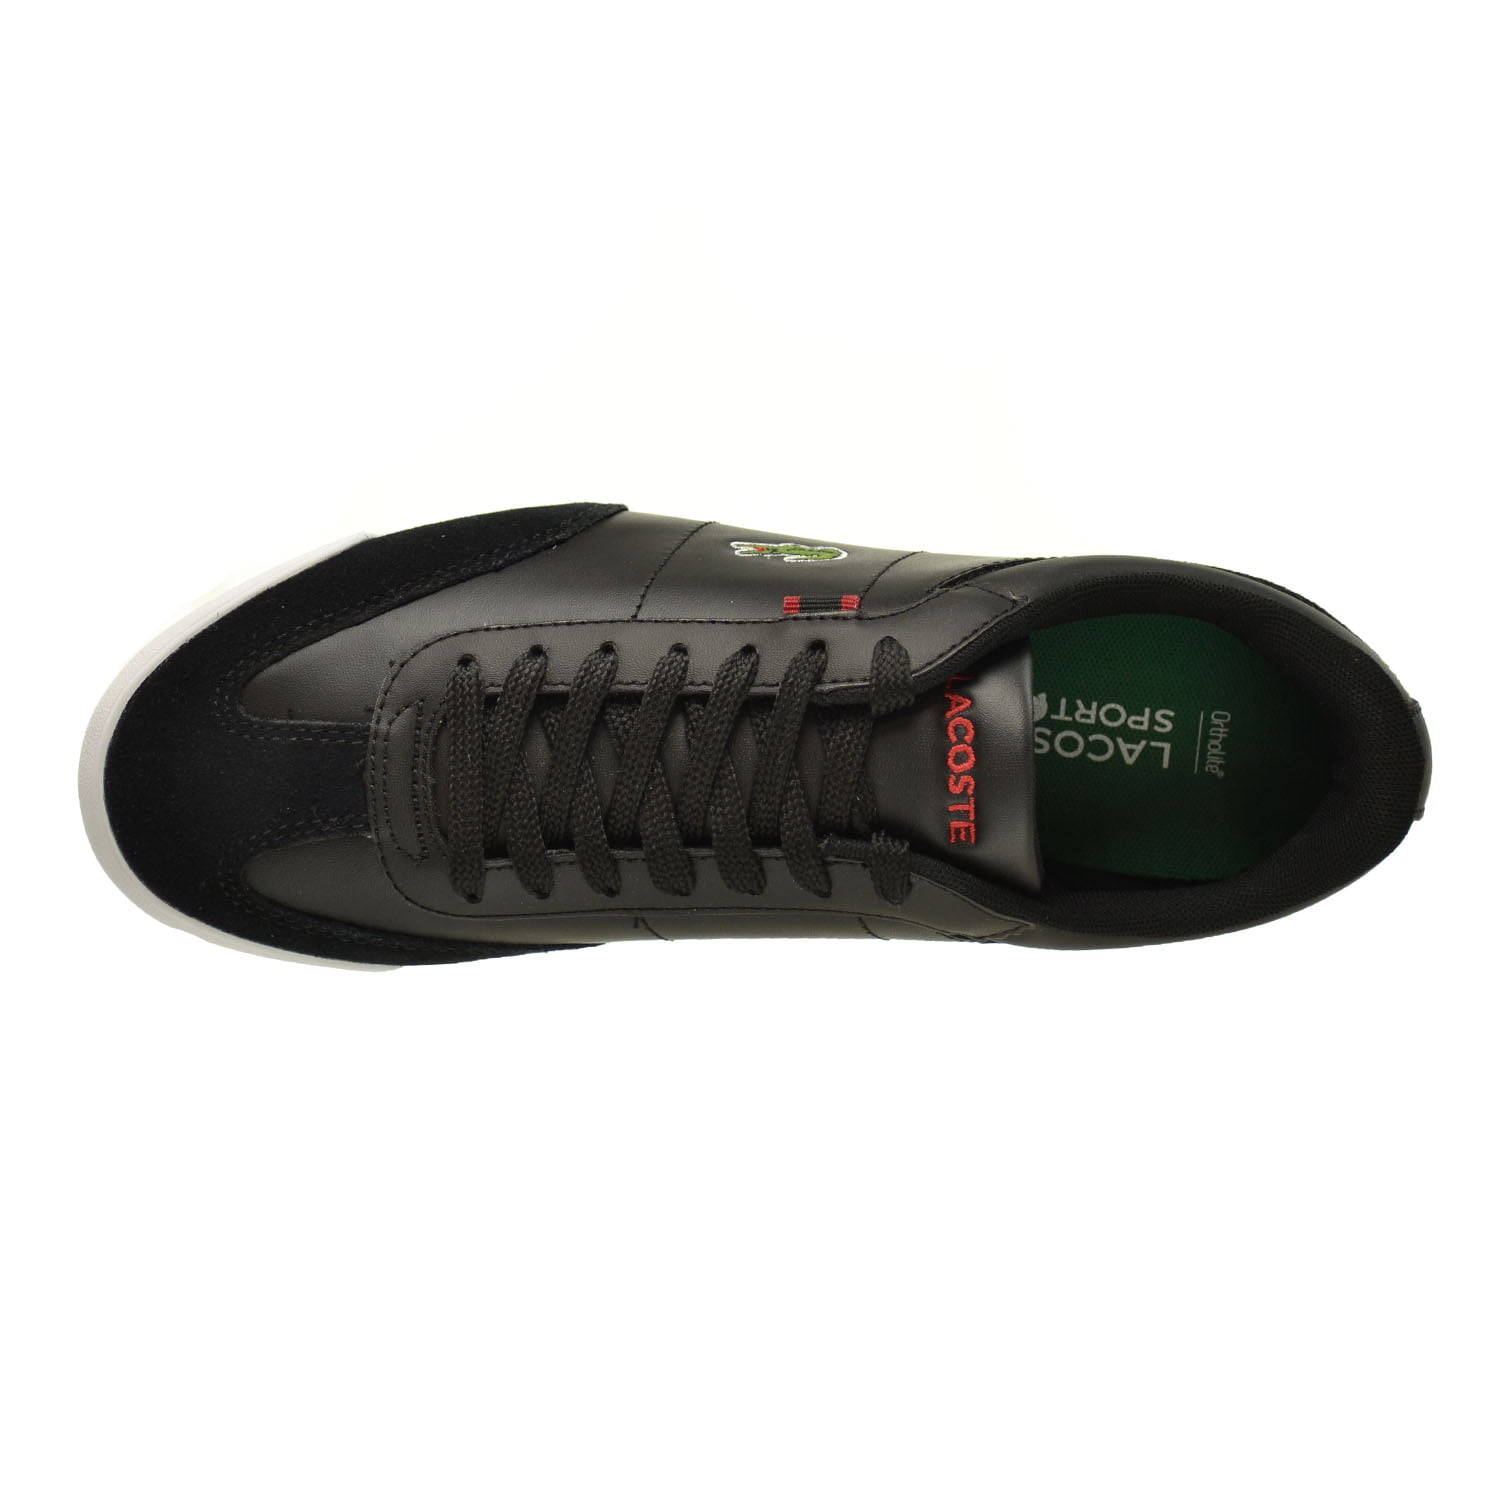 Lacoste Romeau HTB Shoes Black/Red 7-29spm2031-1b5 -